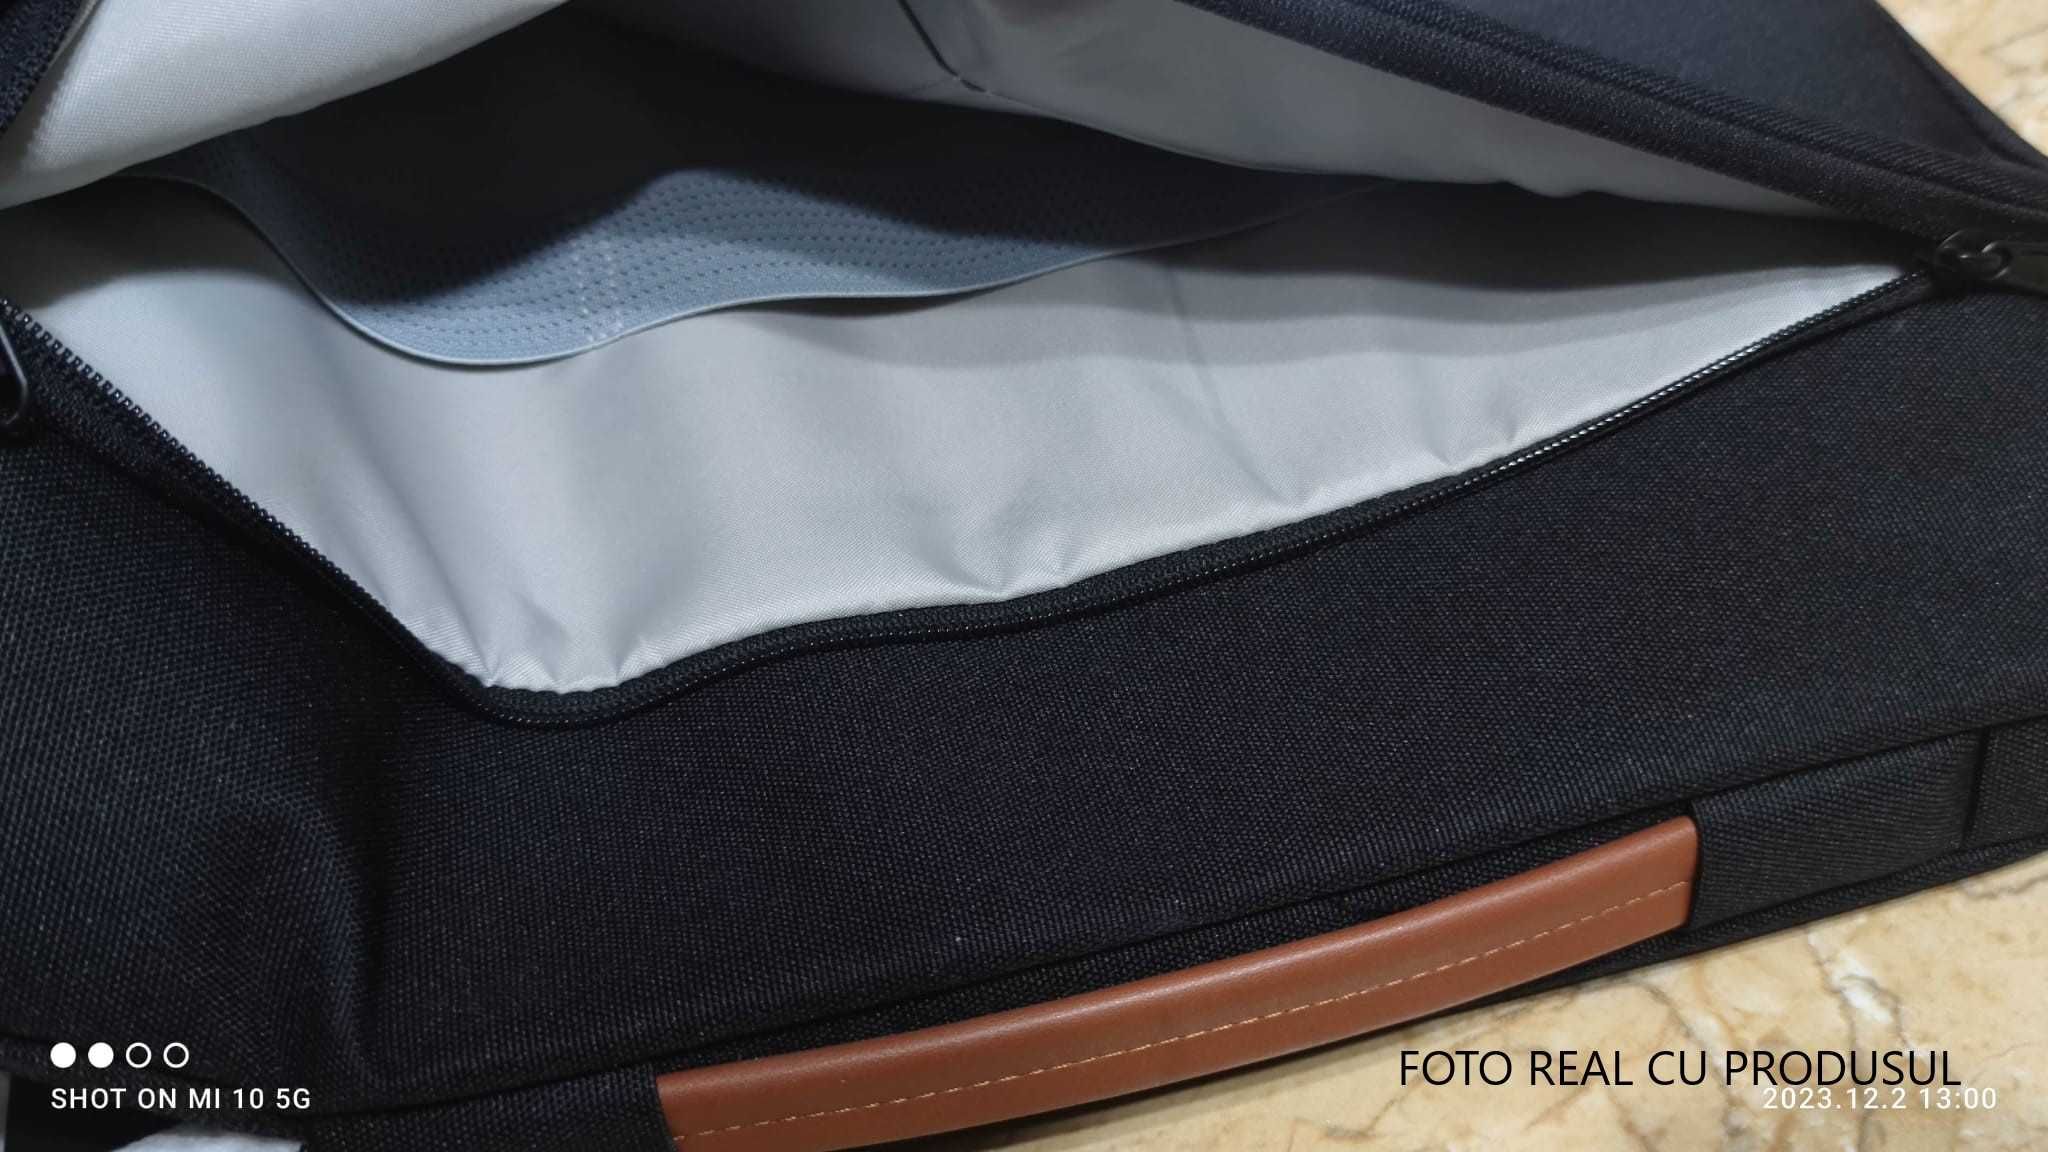 Vand geanta pentru laptop 15.6" (culoare negru)